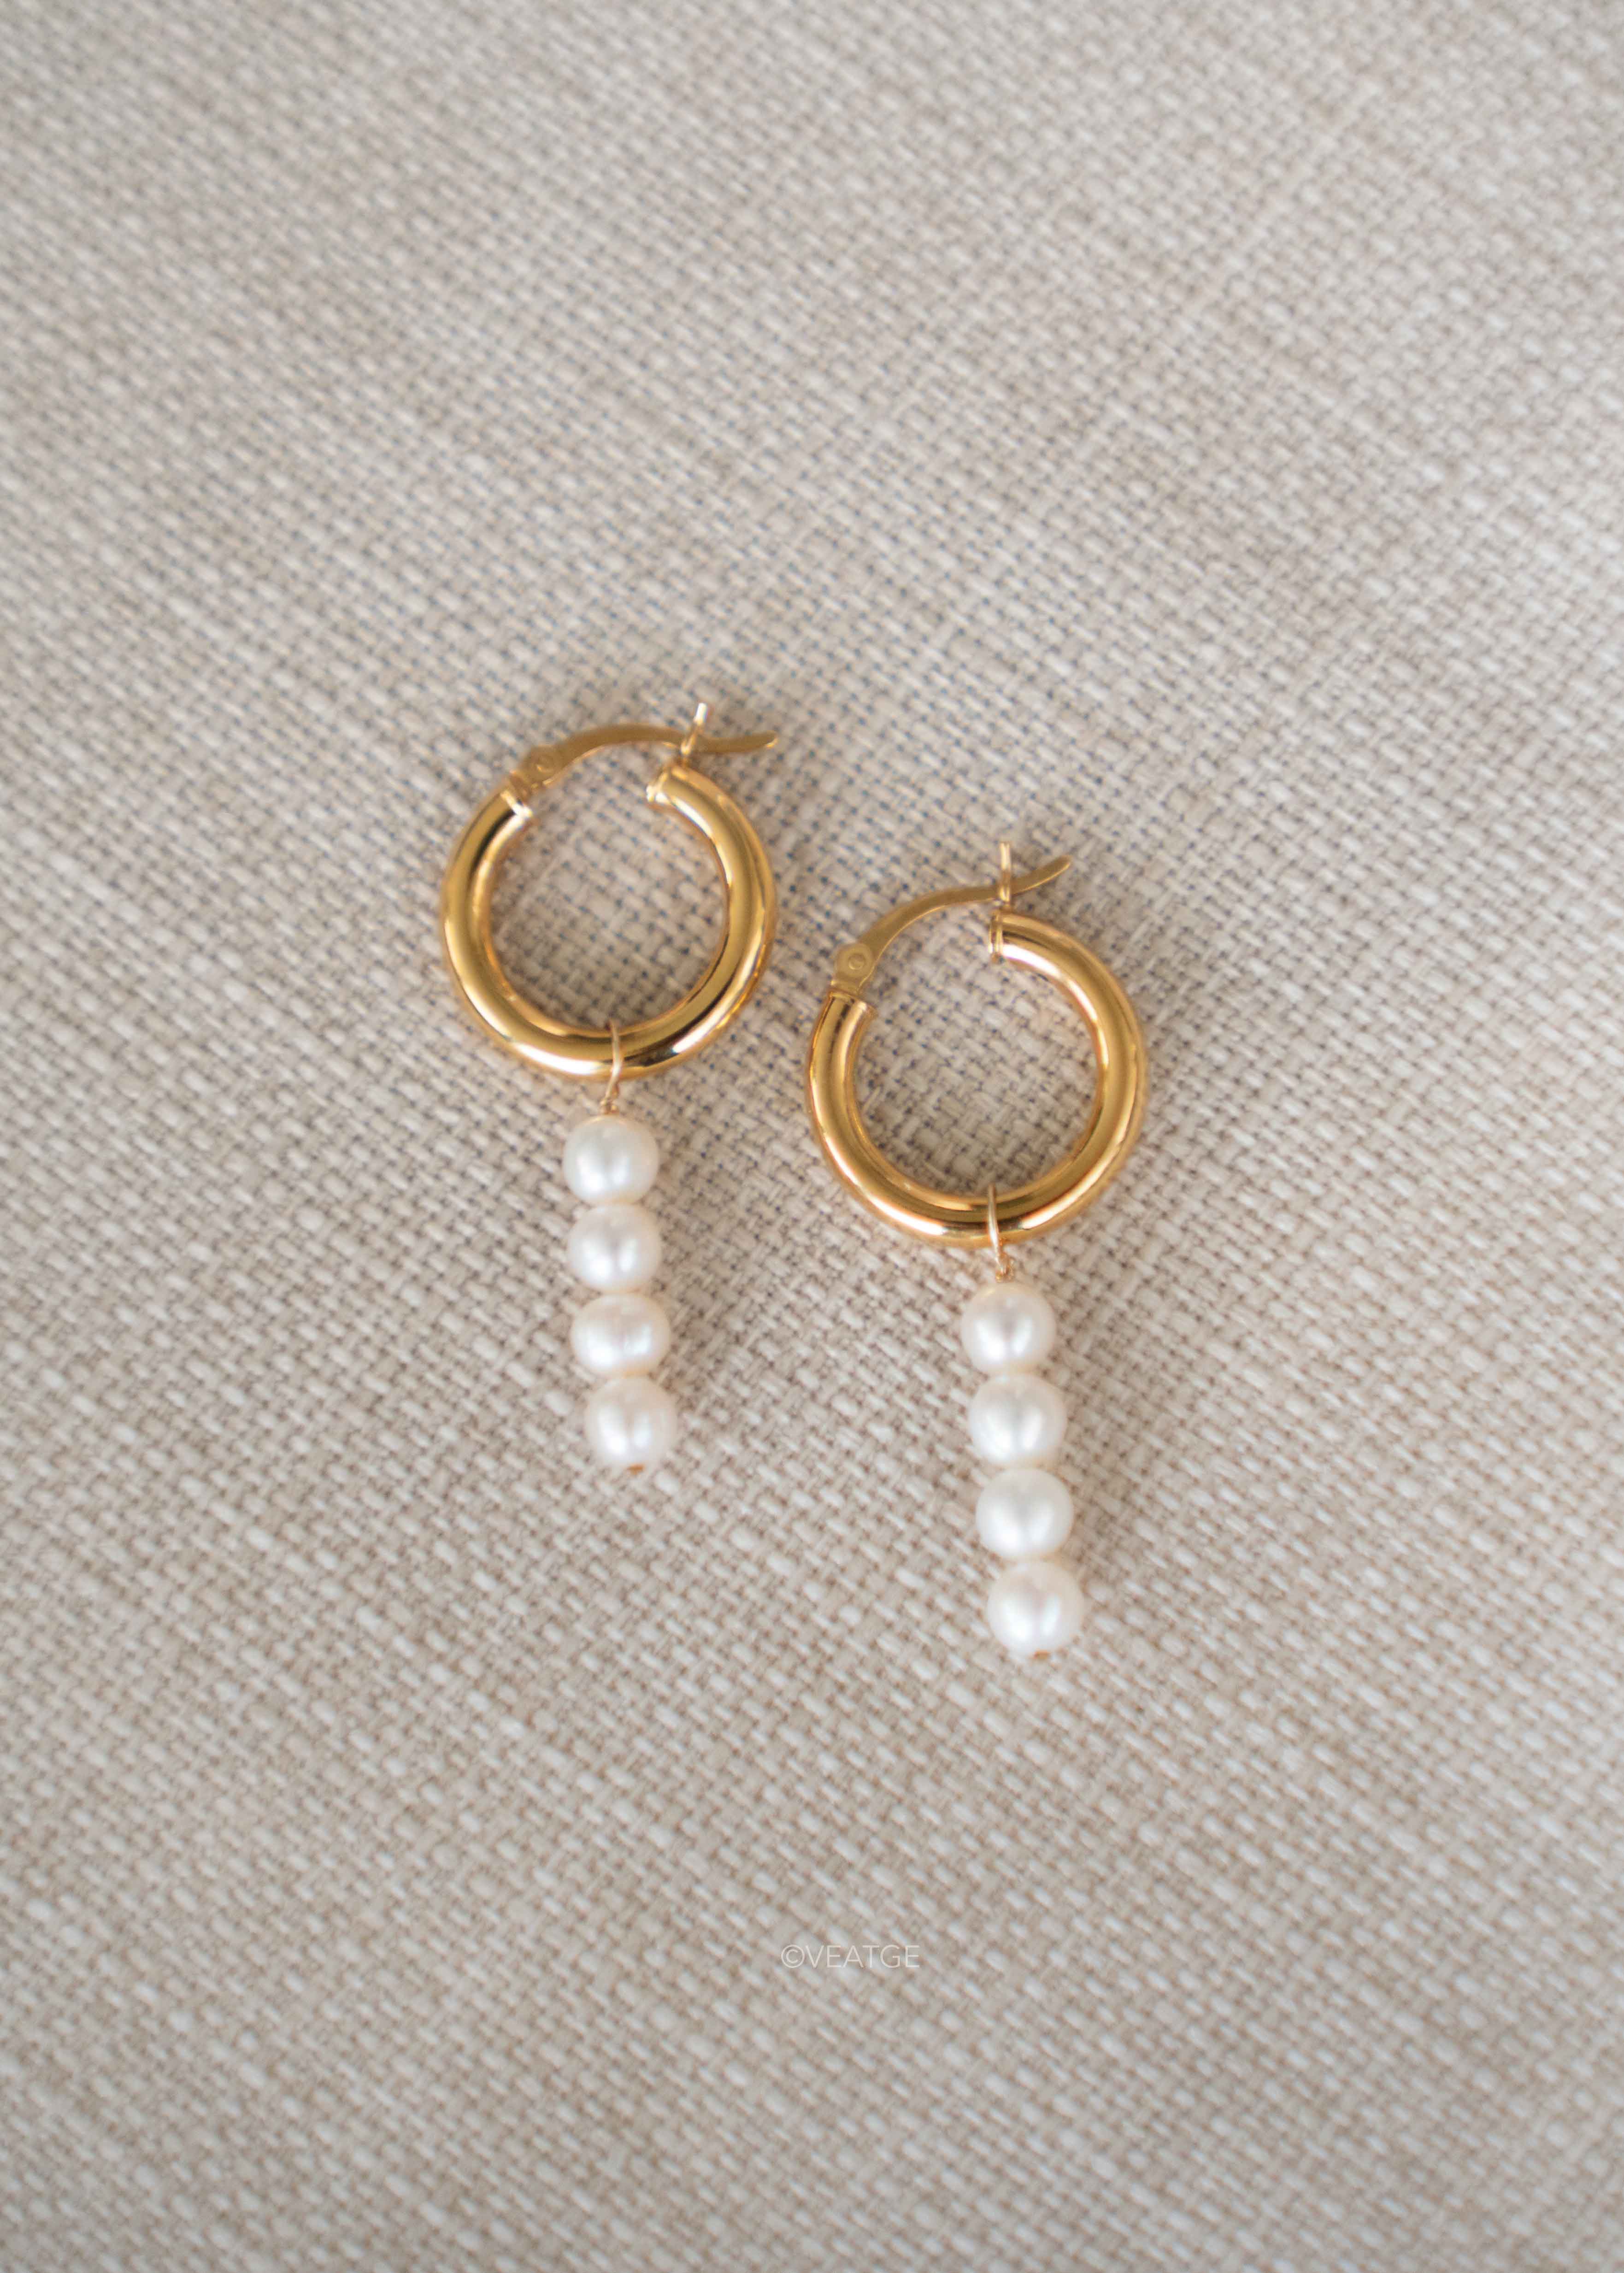 Modern Pearl Drop Dangle Gold Hoop Earrings Unique Gifts for Women 